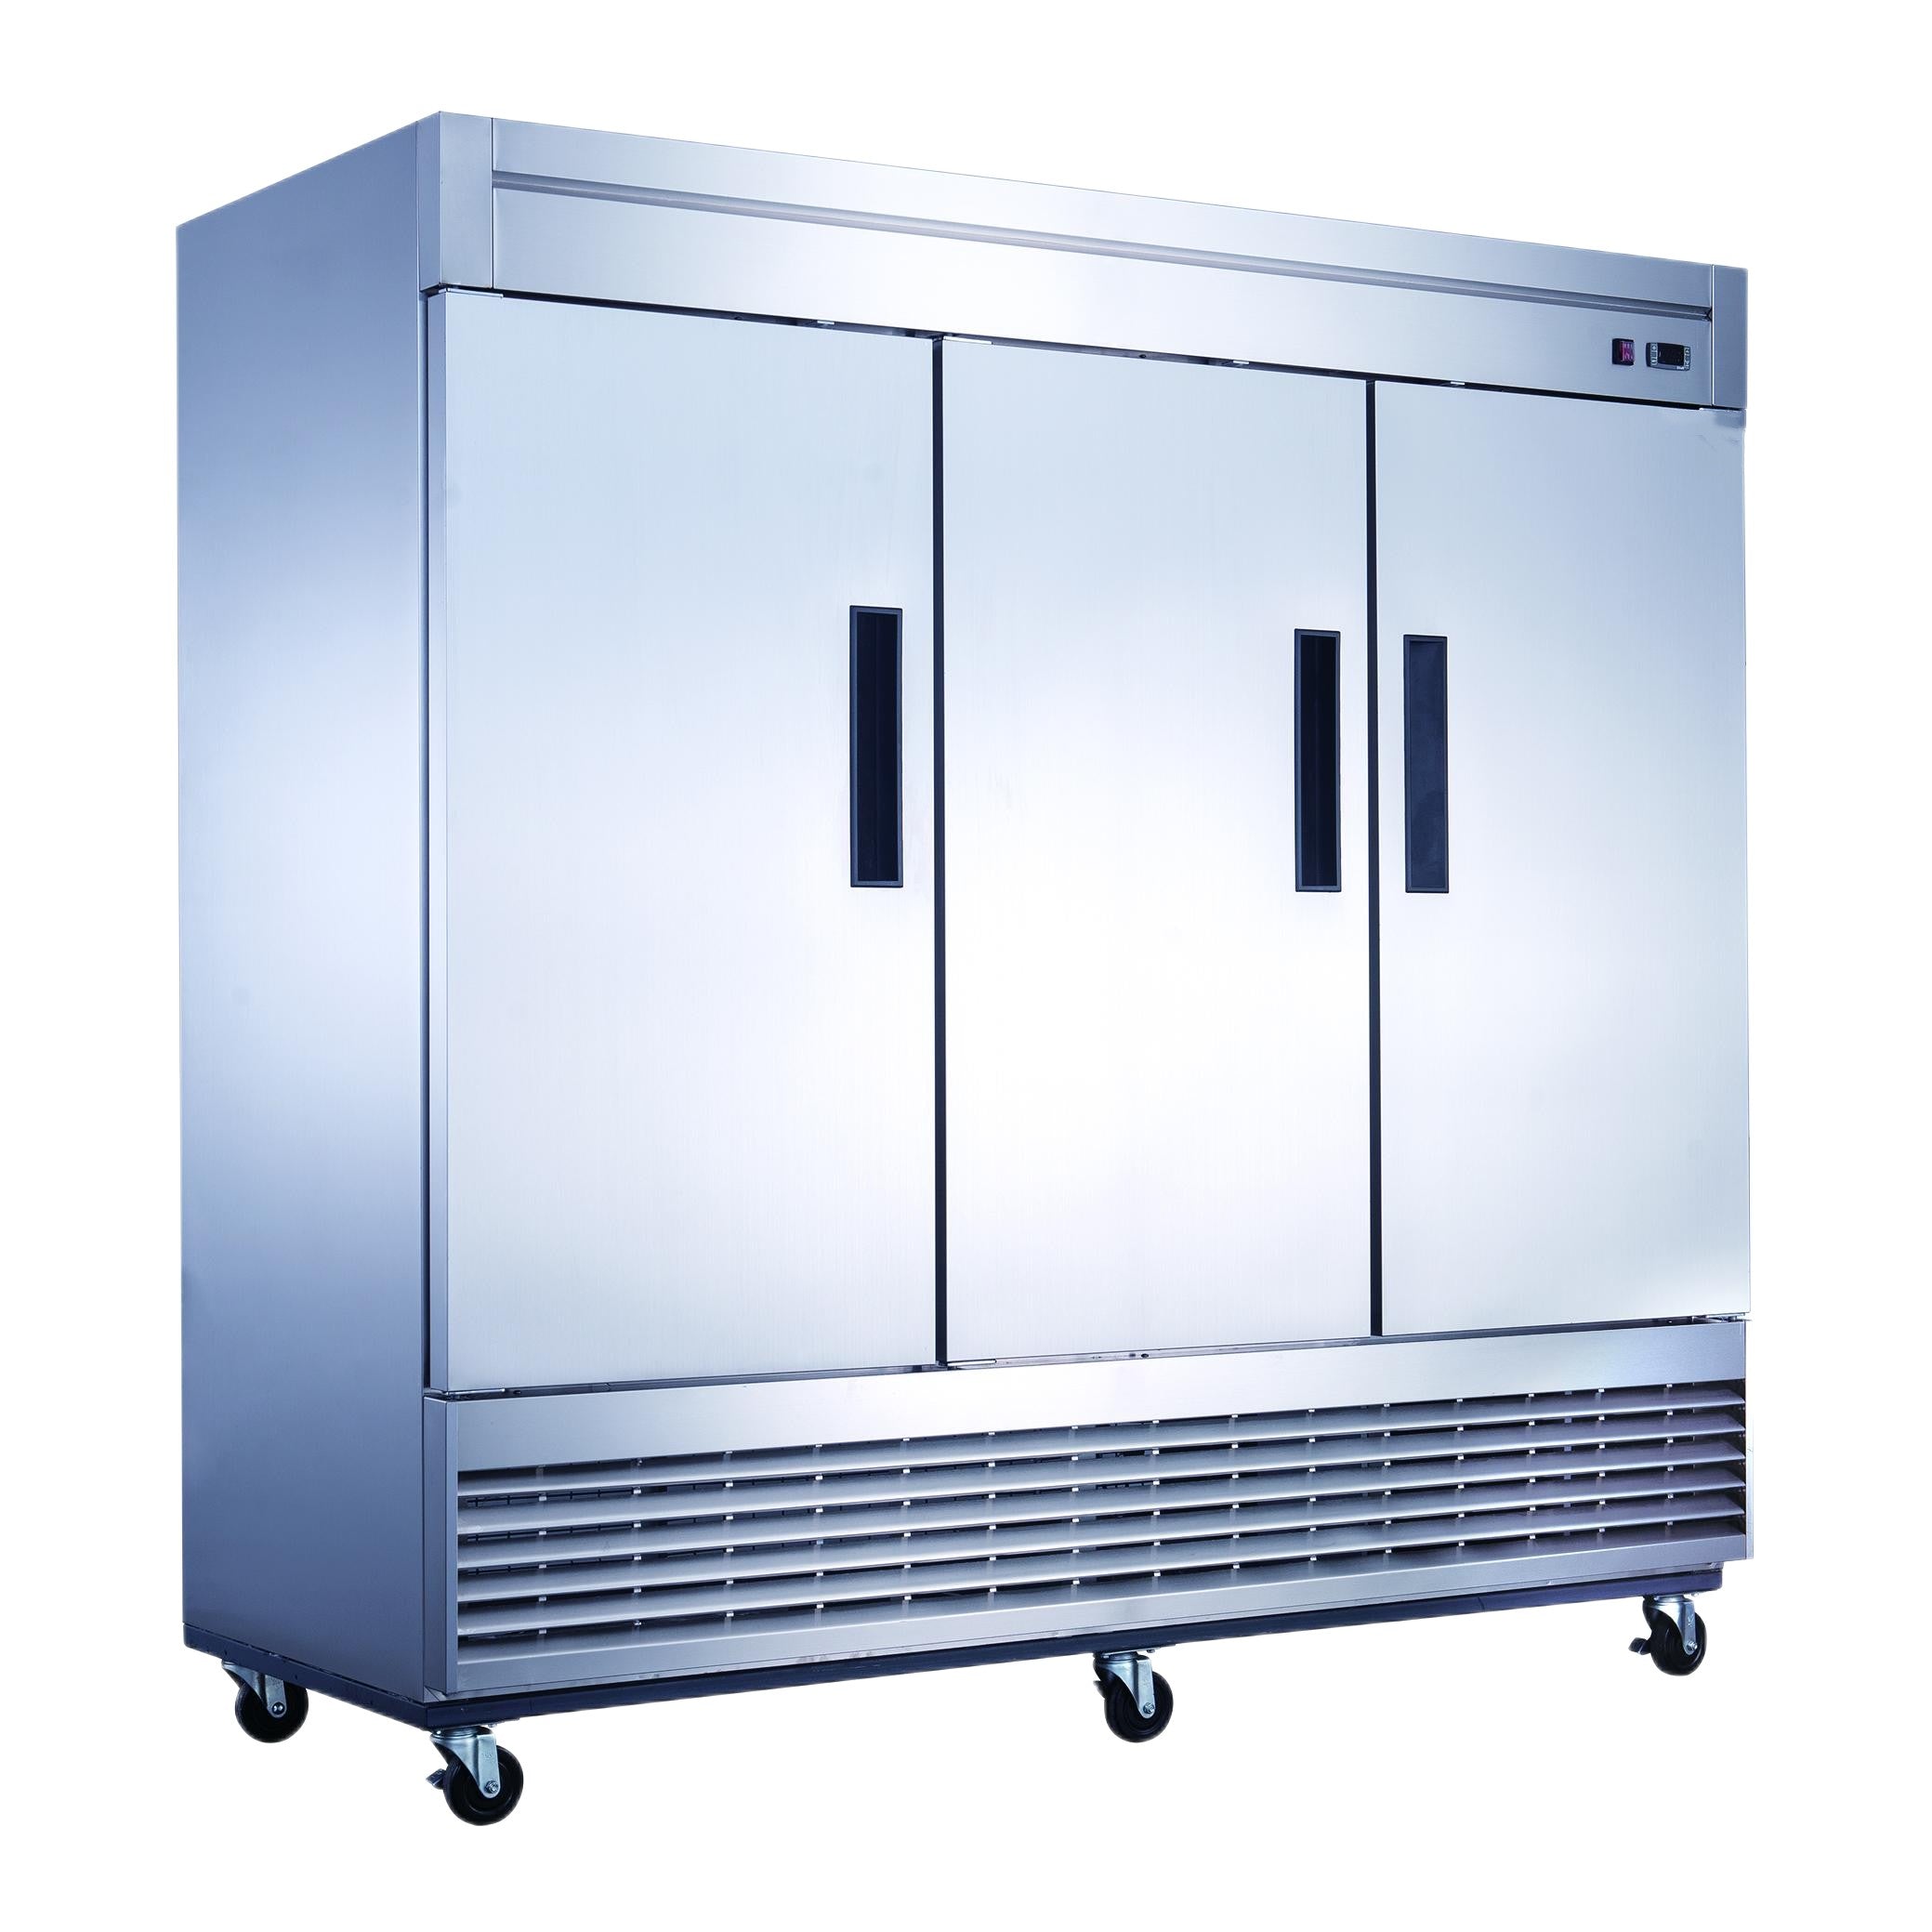 81" Reach-In Refrigerator 3 Solid Door, XB81R-HC